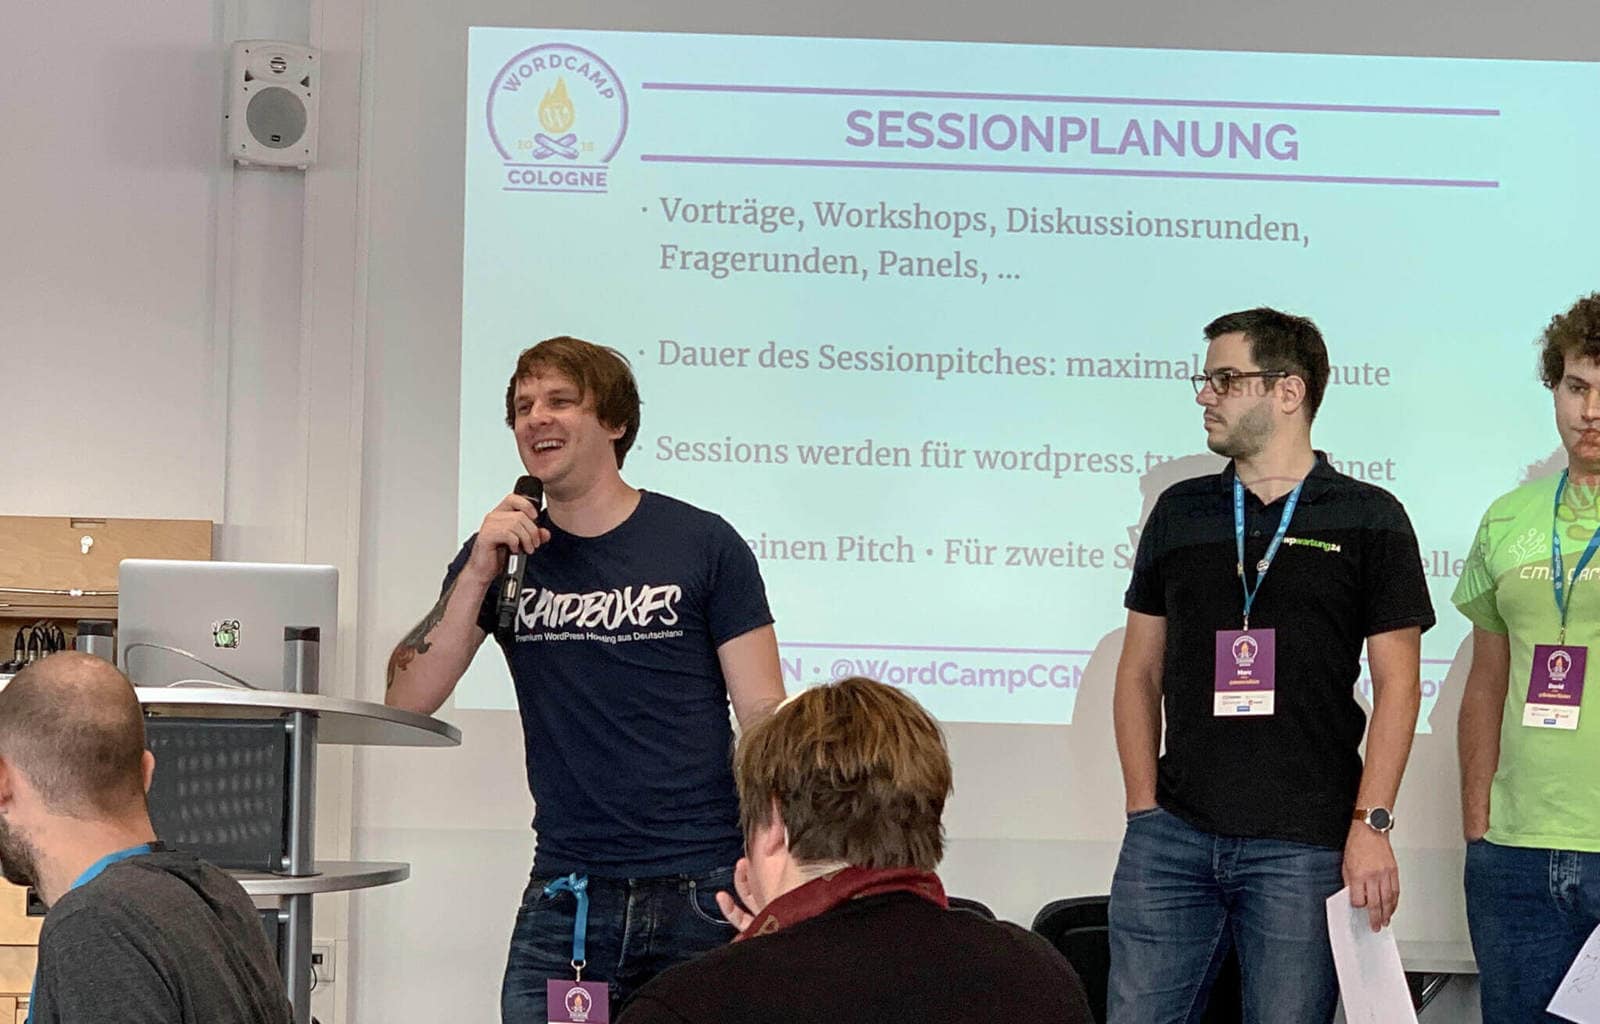 WordCamp Köln: Matthias von Raidboxes på sessionen pitch